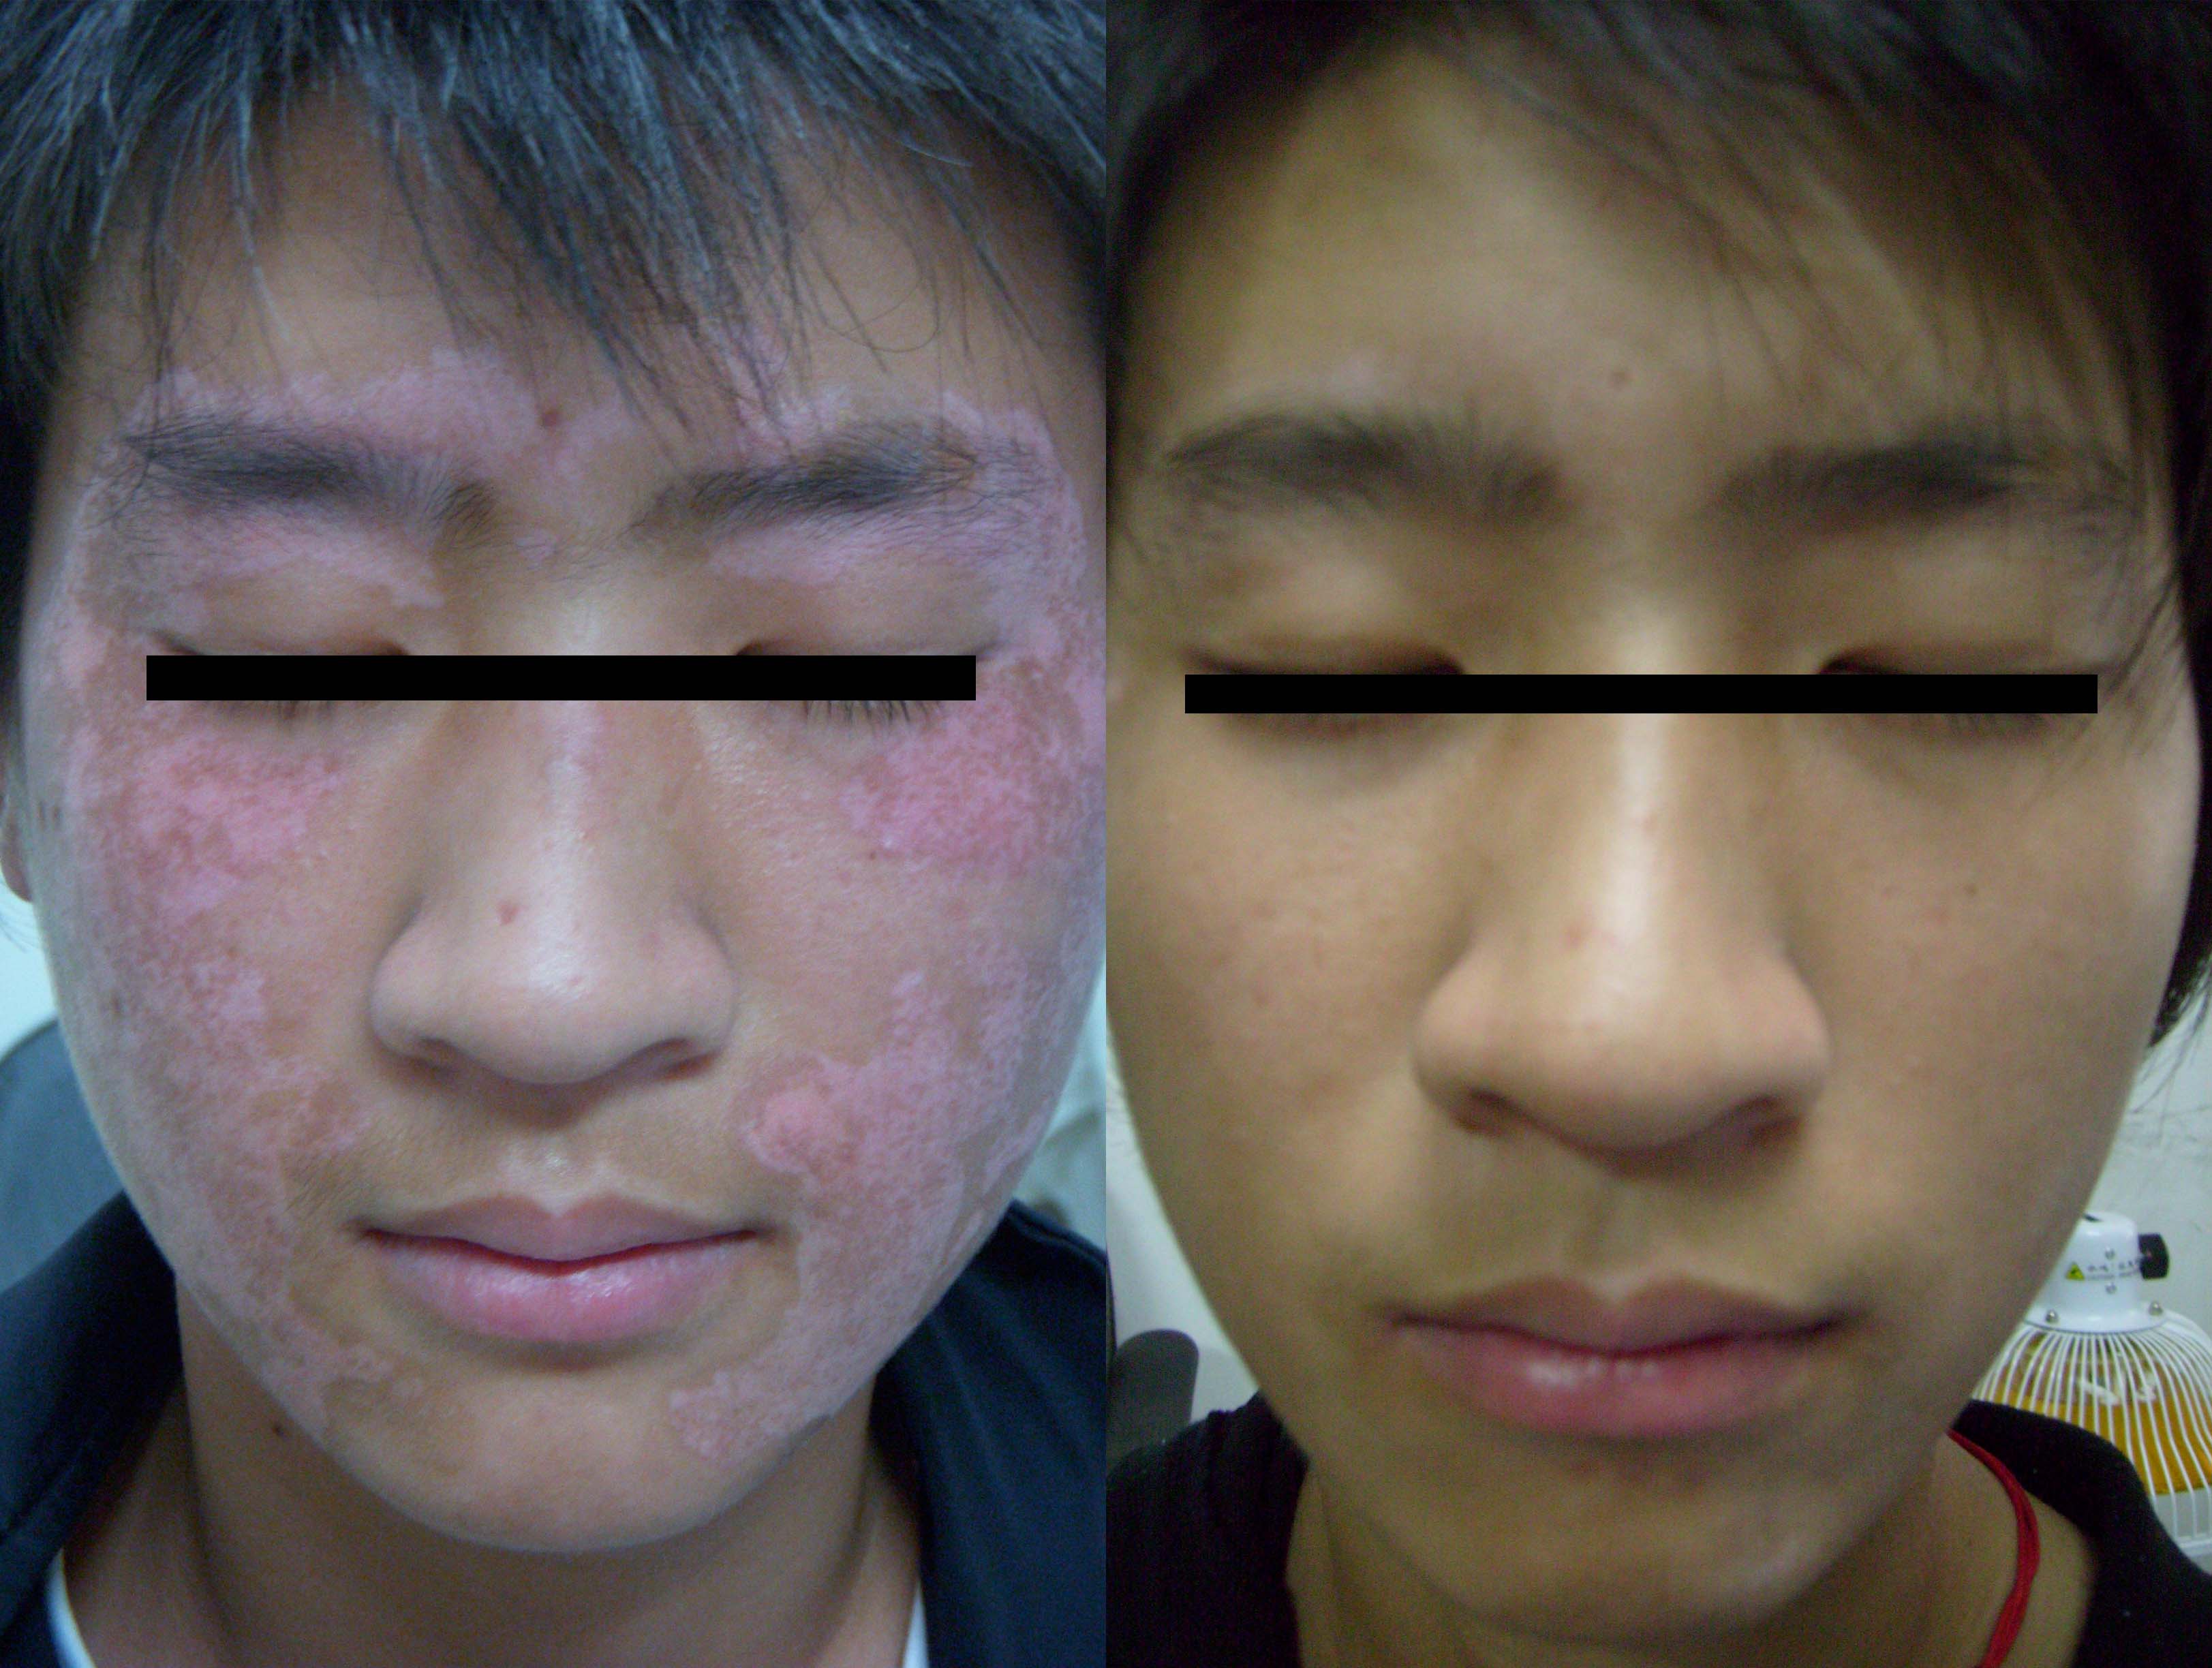 发病初期白癜风症状轻,患者脸部皮肤上的白斑数量以及面积都不多,皮损